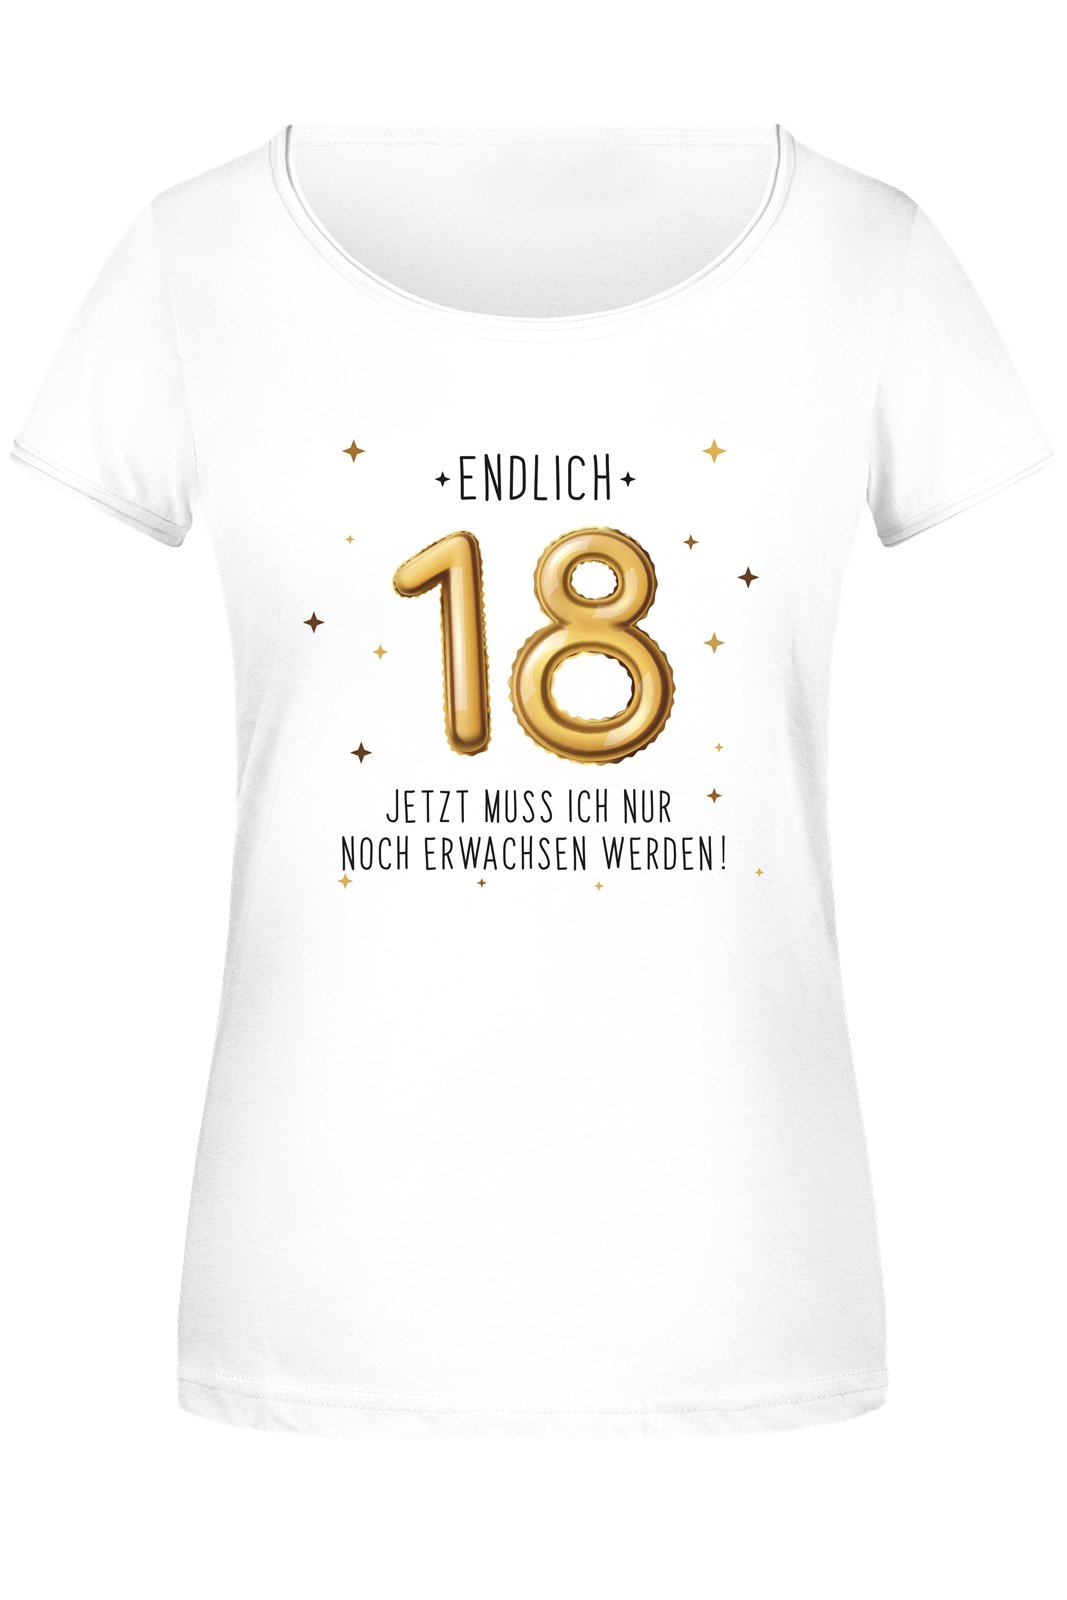 Bild: T-Shirt Damen - Endlich 18 Jetzt muss ich nur noch Erwachsen werden! - Gold Geschenkidee